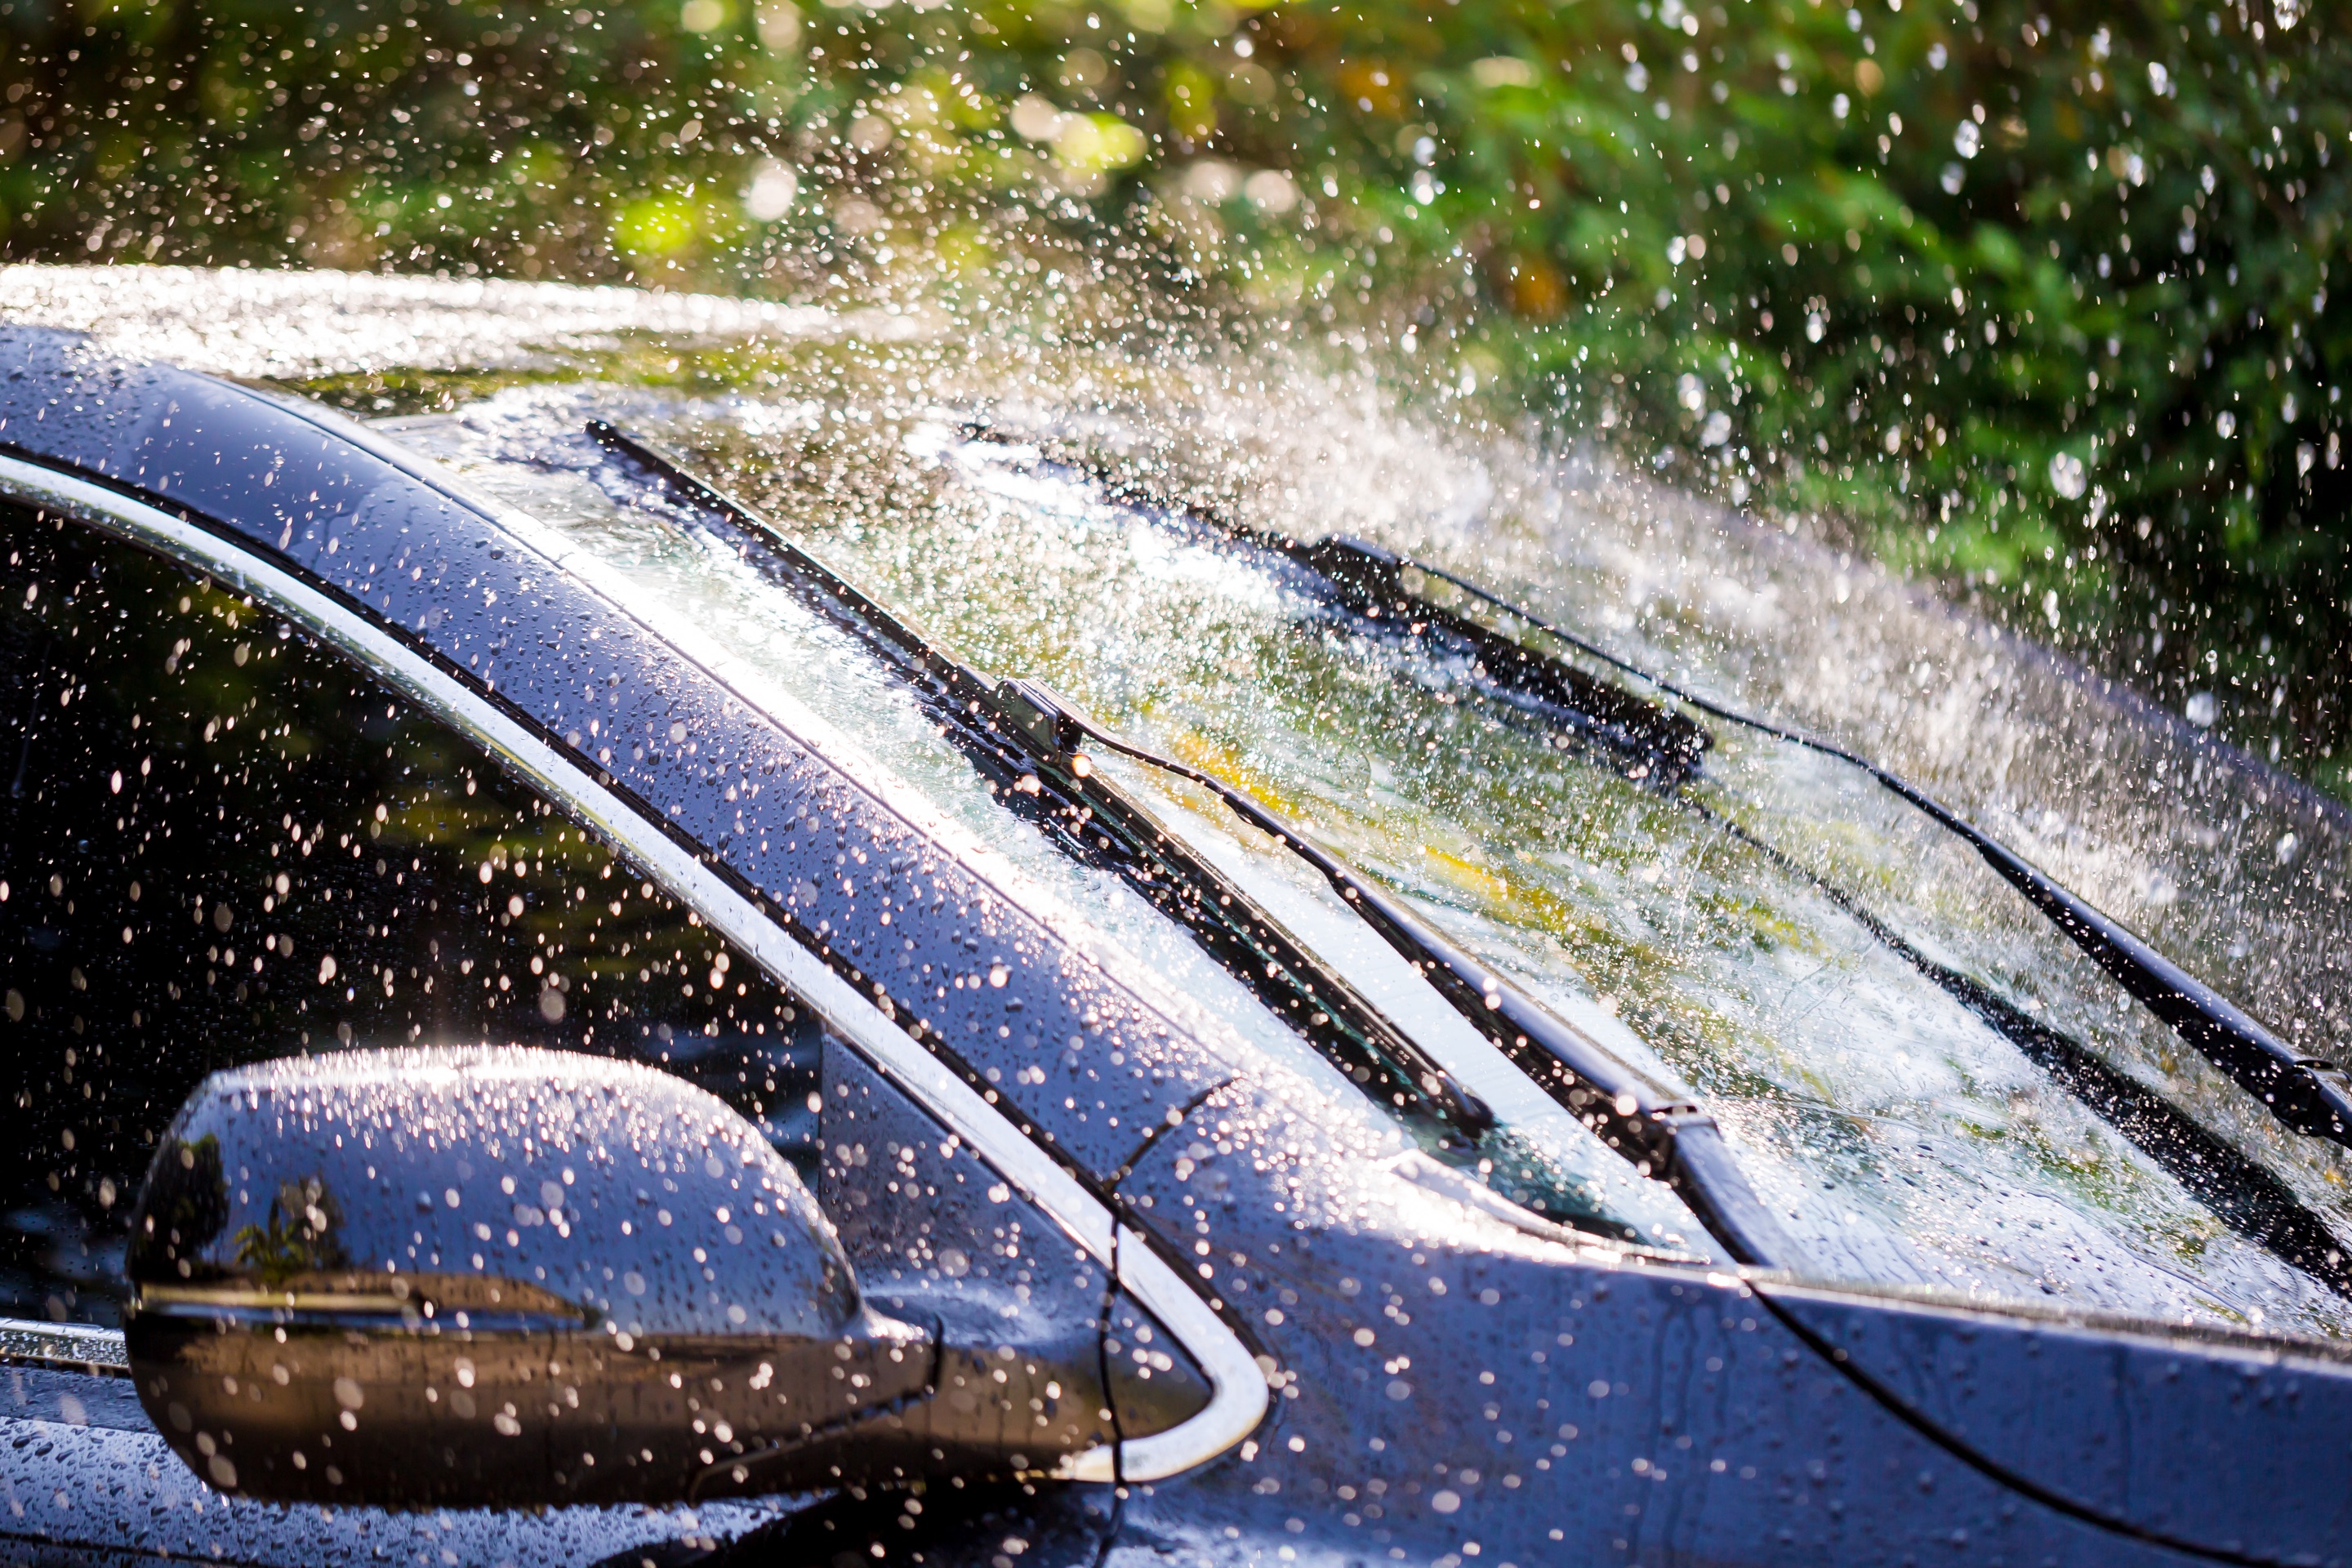 Защита автомобиля от дождя. На авто от дождя. Машина под дождем щетки. Дождь в лобовое стекло. Мойка машины в дождь.